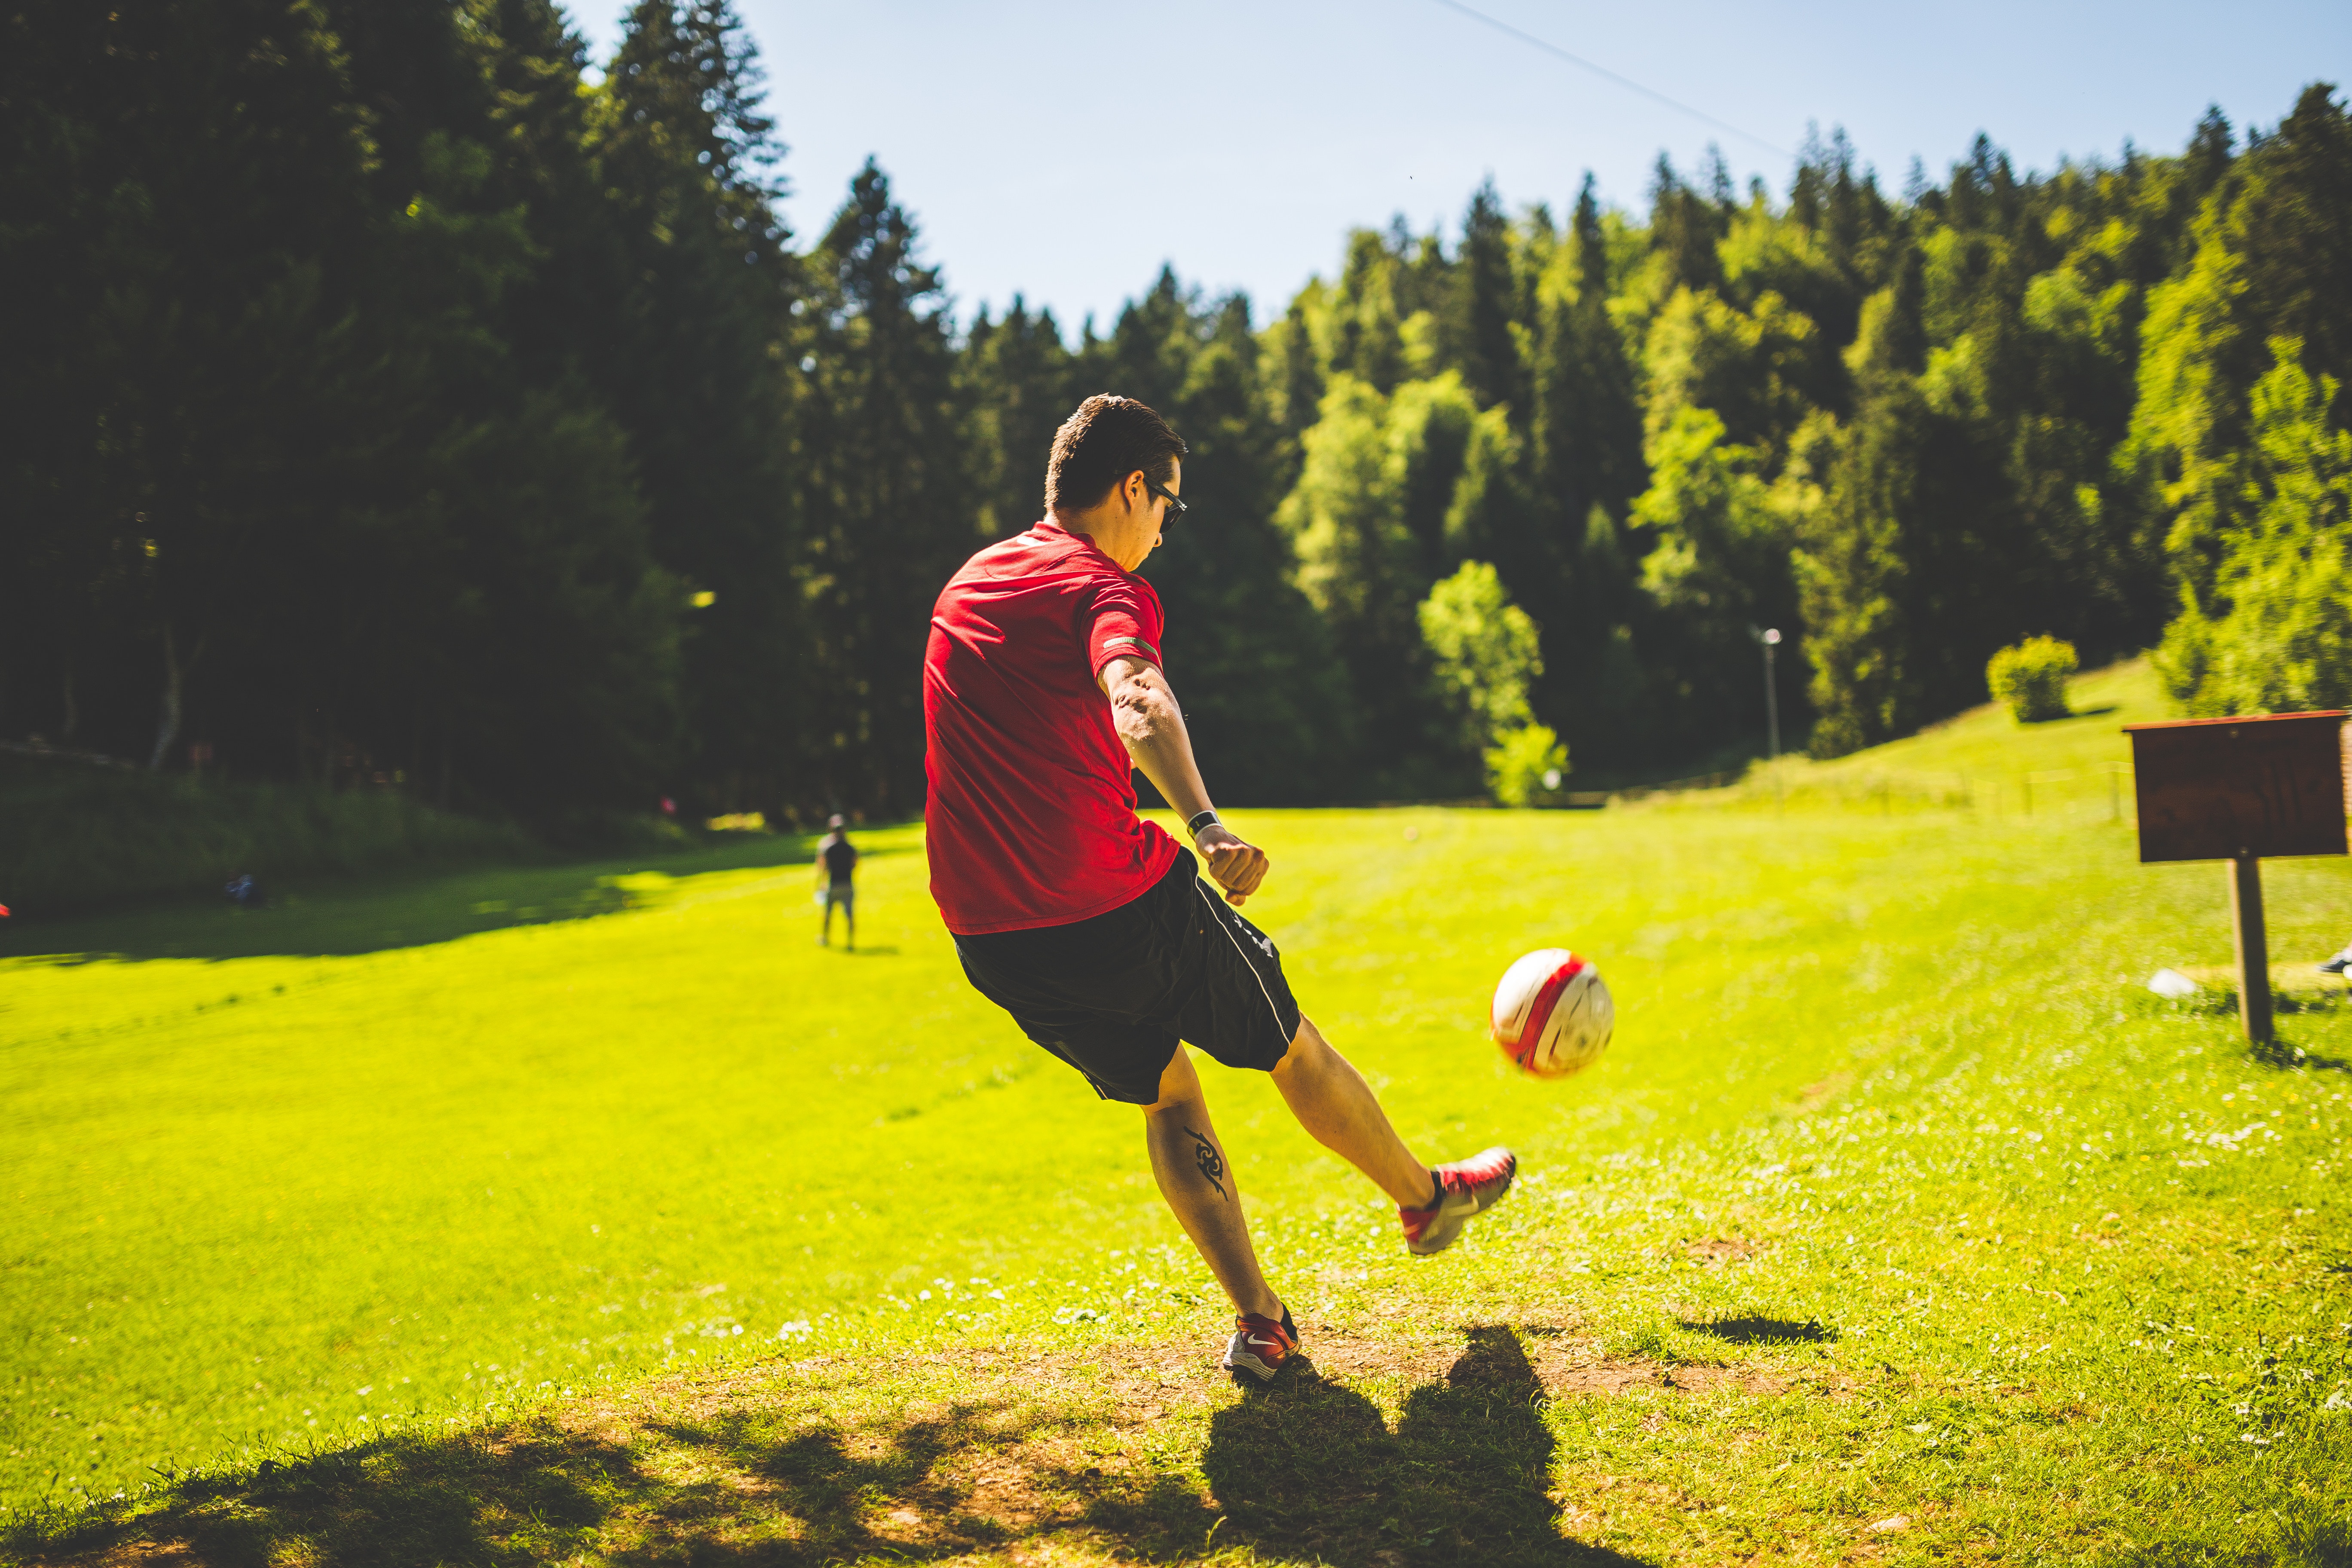 Do you enjoy playing sports. Парень с мячом. Футбол на природе. Парень с футбольным мячом. Увлечение спортом.